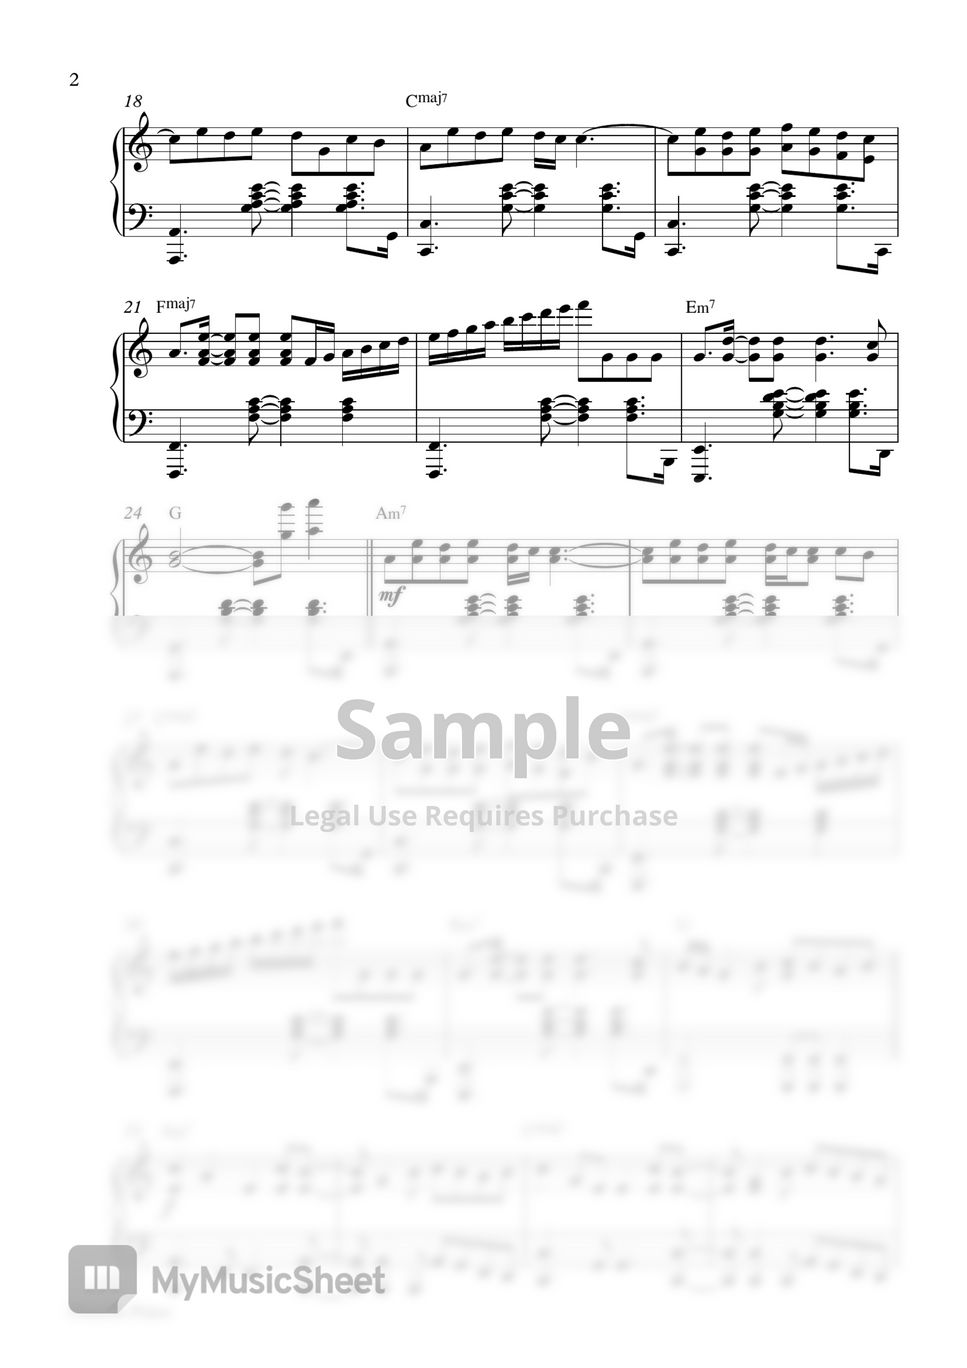 Shawn Mendes, Camila Cabello - Senorita (Piano Sheet) by Pianella Piano